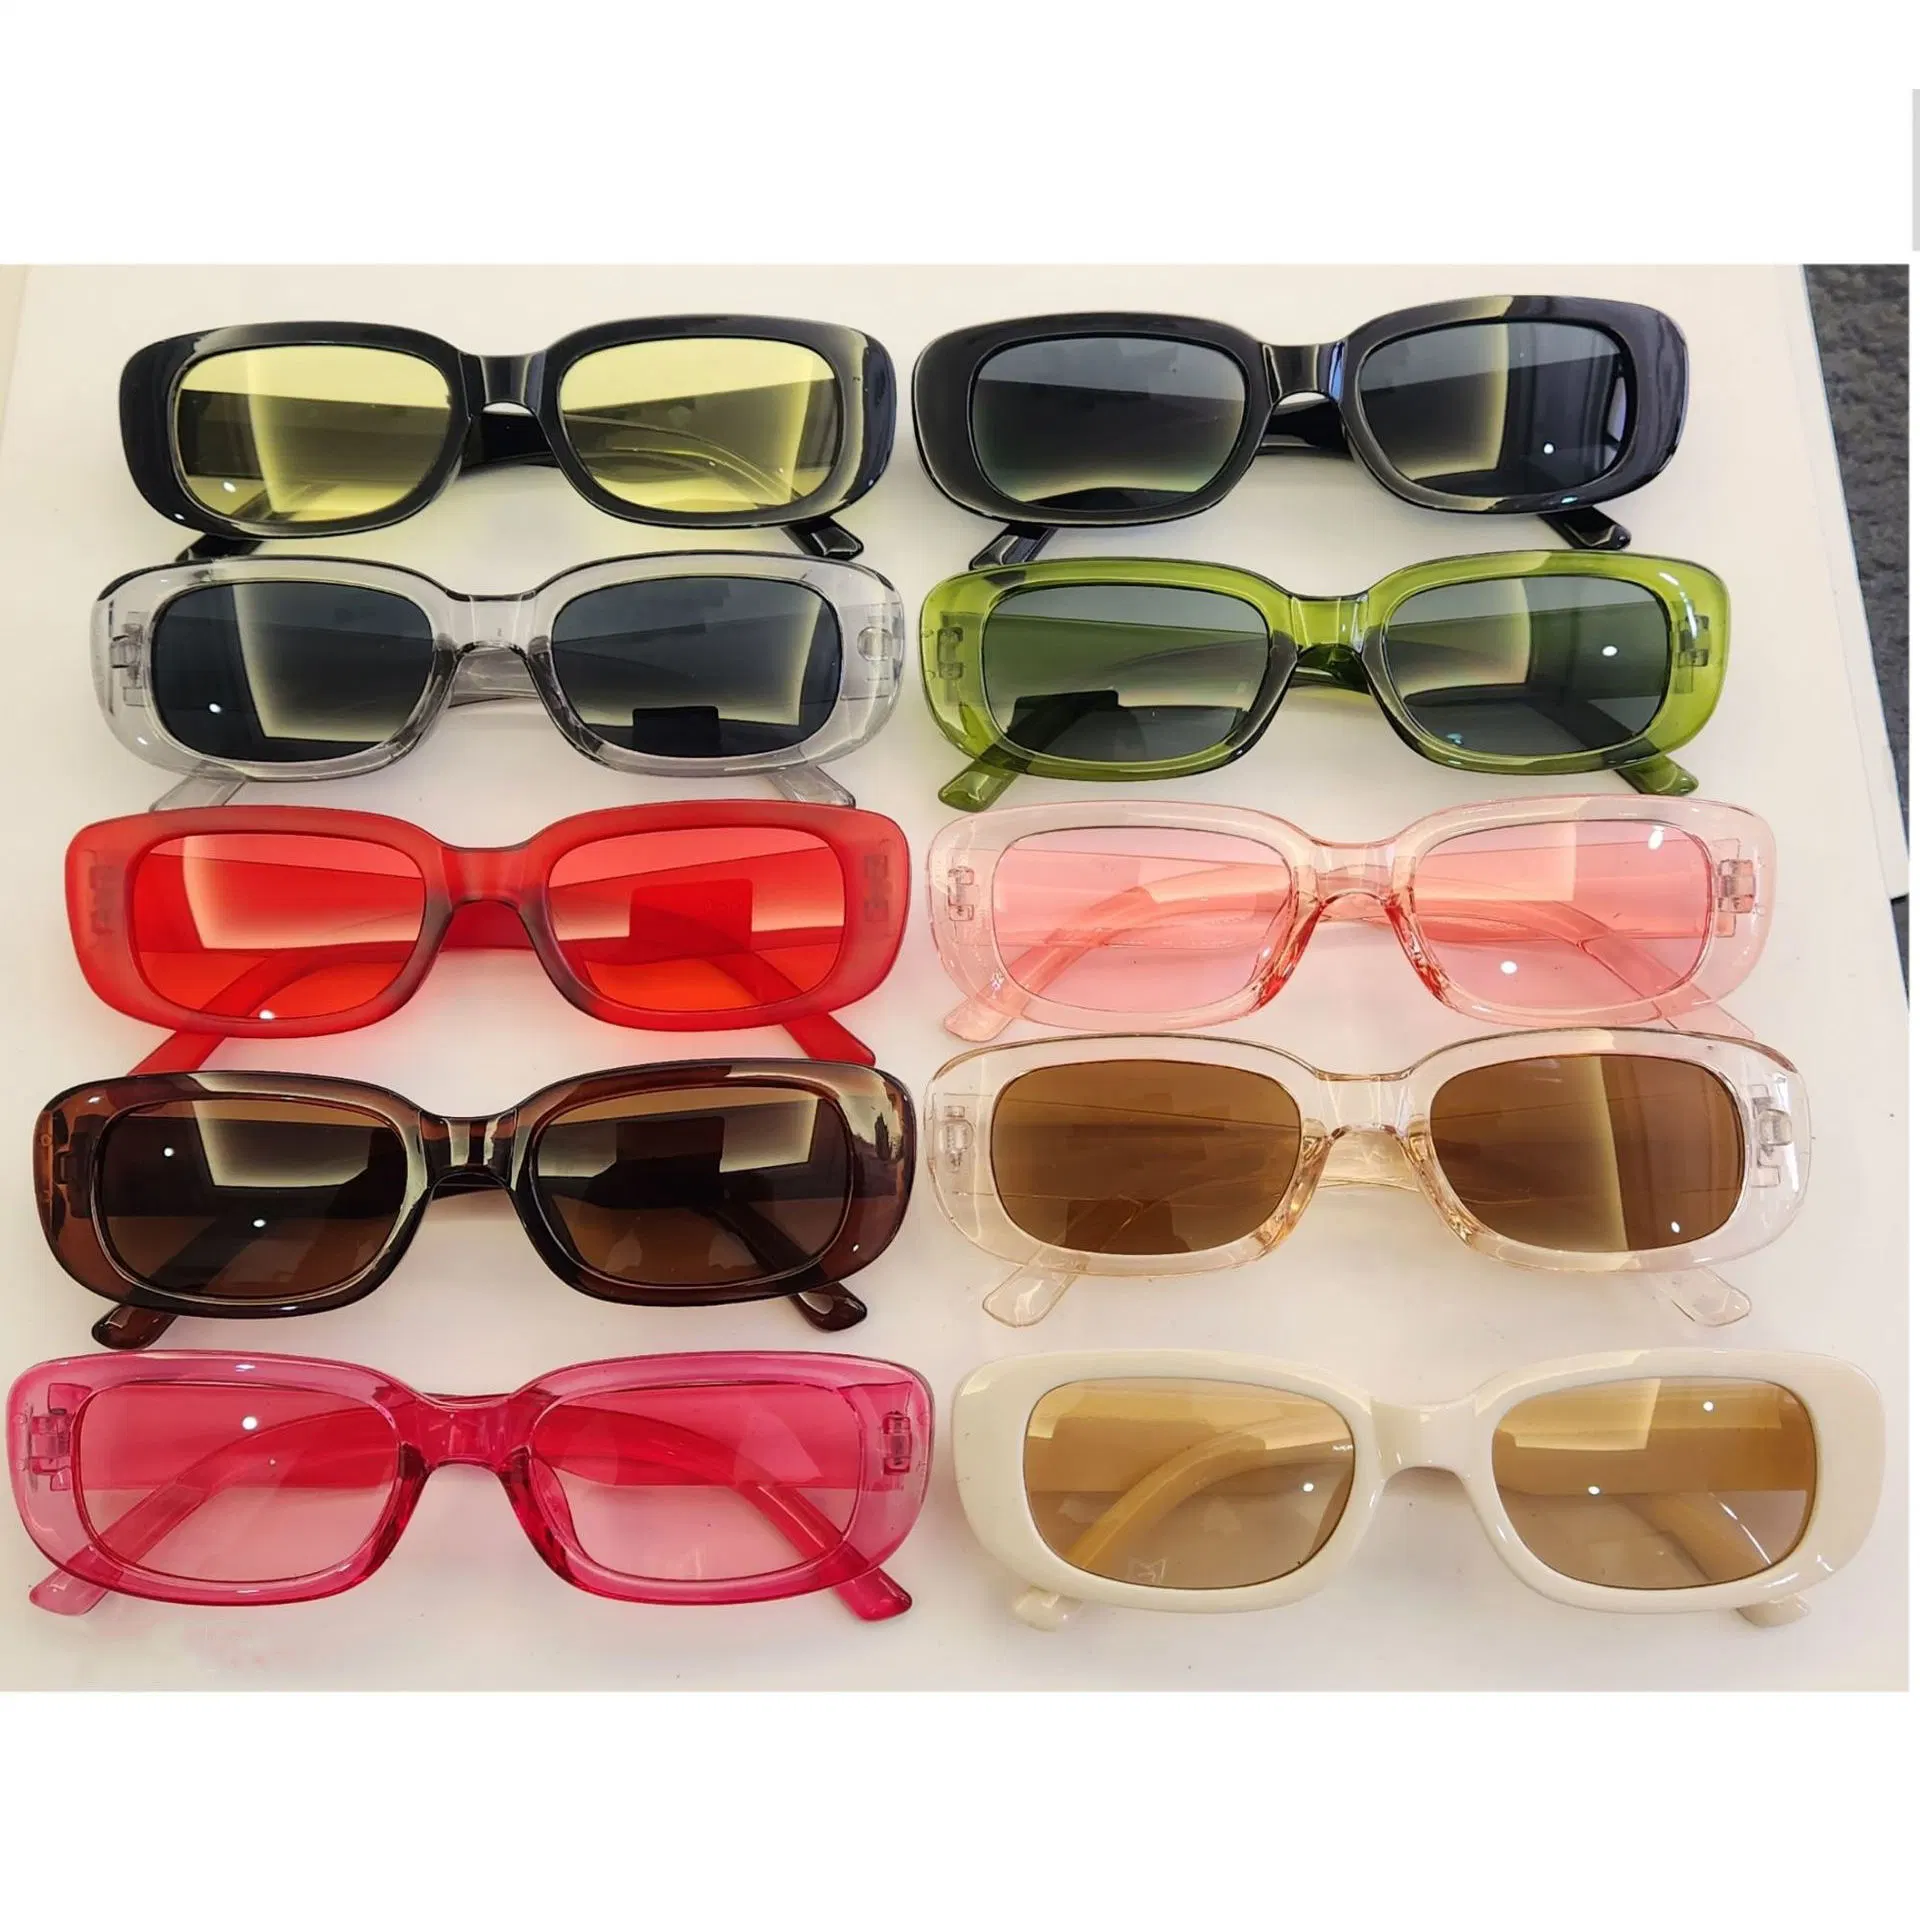 Buena calidad Hot Sale Factory de moda Alta calidad Polarizado Sun Gafas de sol de marco pequeño de diseño de Marca Shades UV400